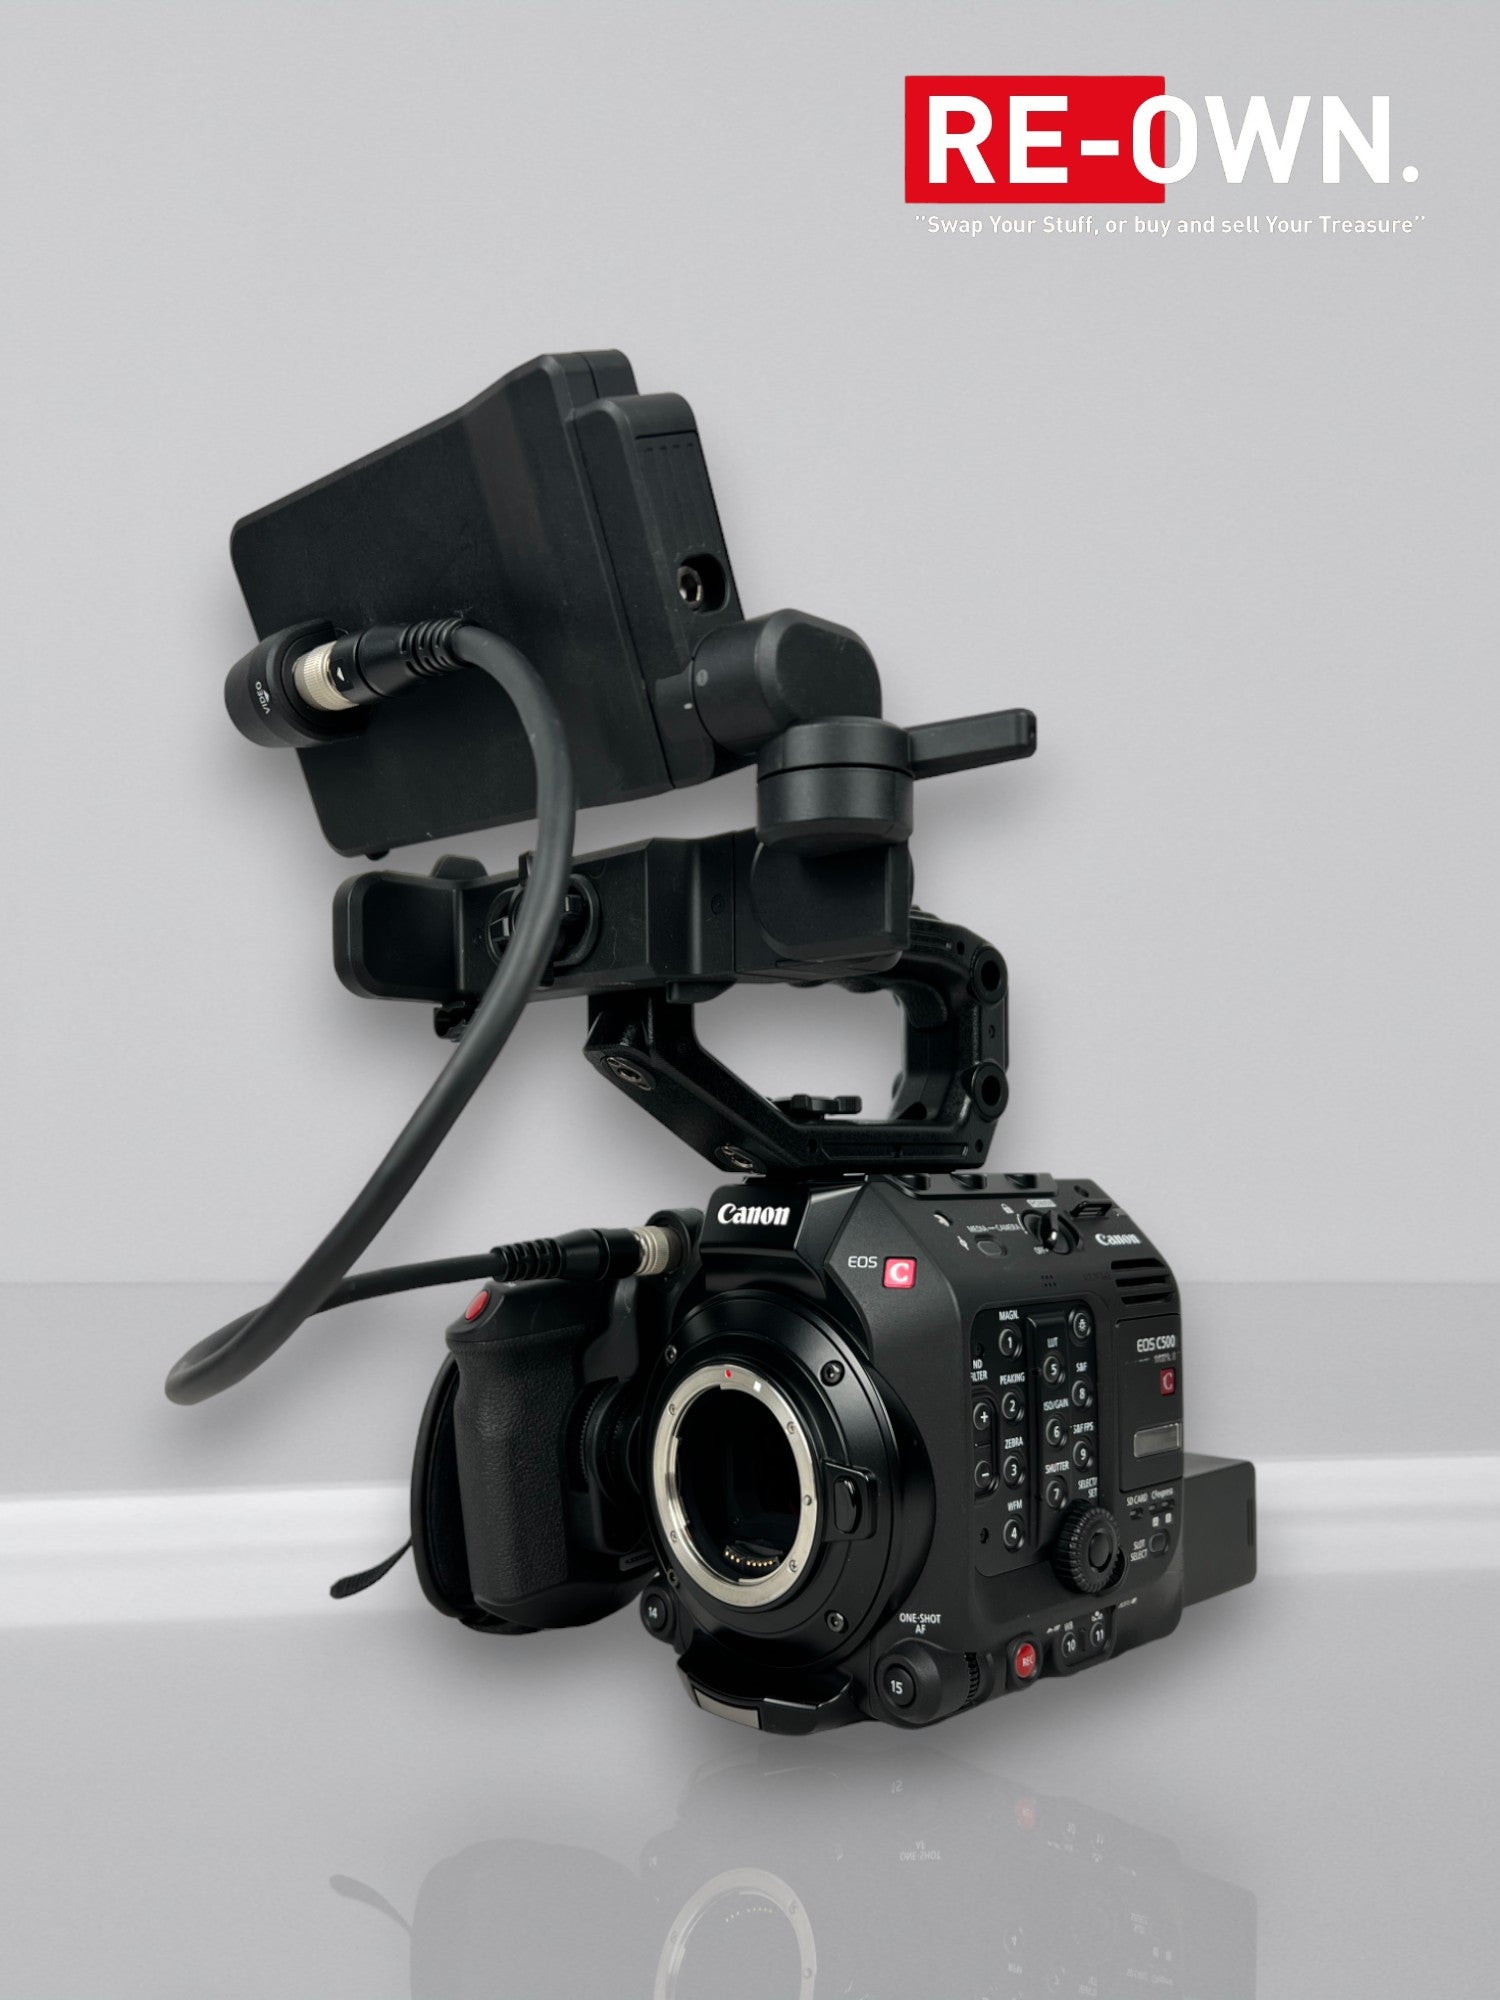 Canon EOS C500 mark II Videocamera